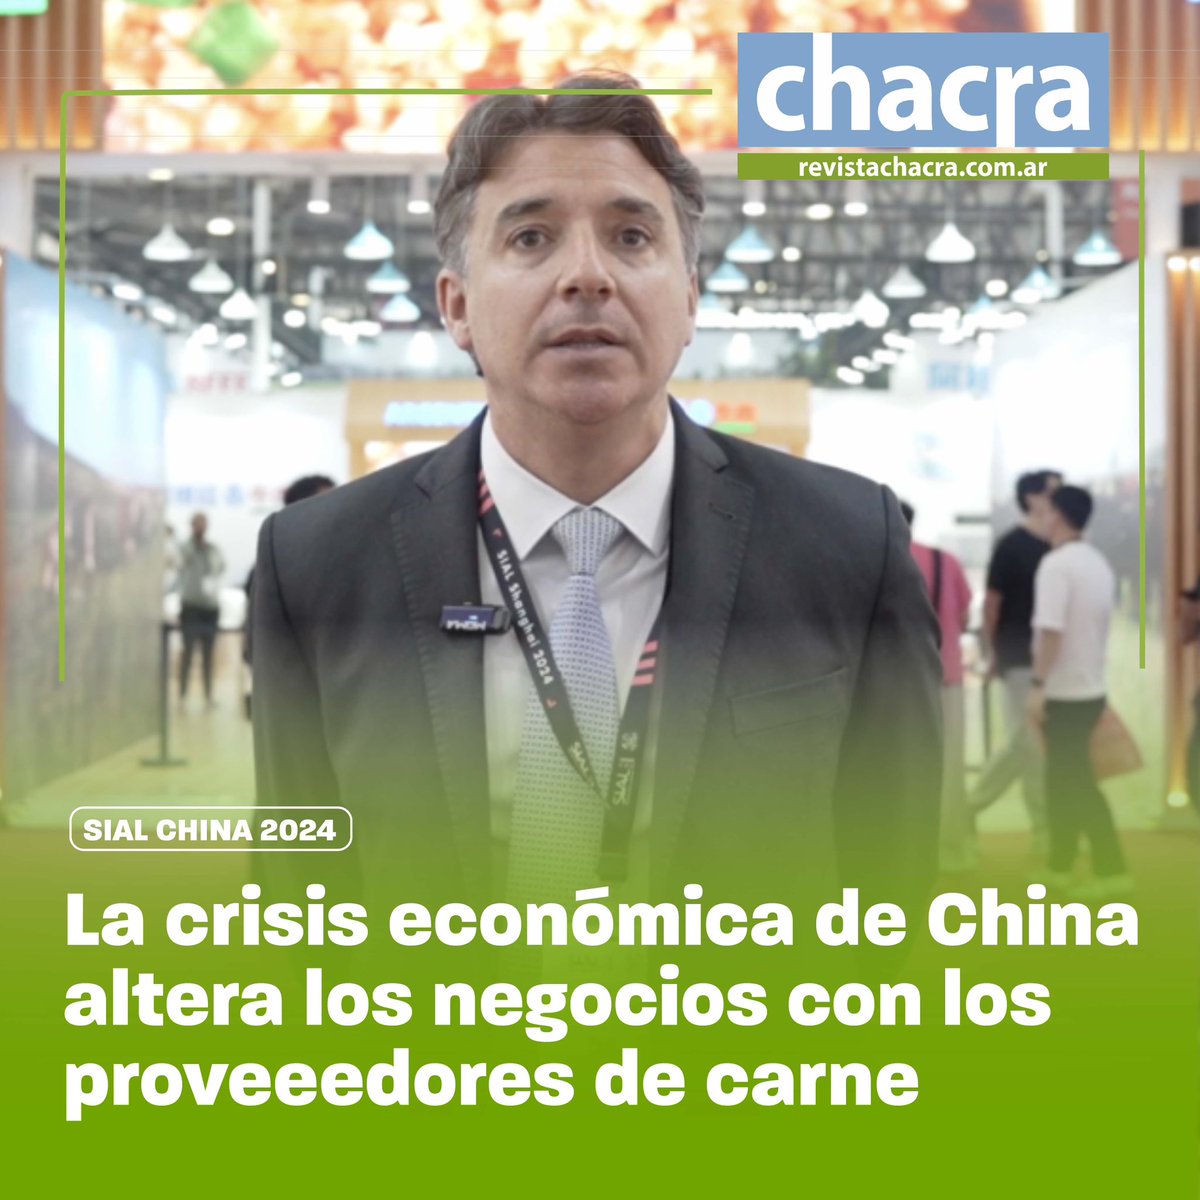 👉🏼La crisis económica de China altera los negocios con los proveeedores de carne👈🏼

El representante del frigorífico ArreBeef de Argentina, hace una síntesis de las condiciones que dificultan los negocios con el principal comprador de carne argentina, como es la propia China.